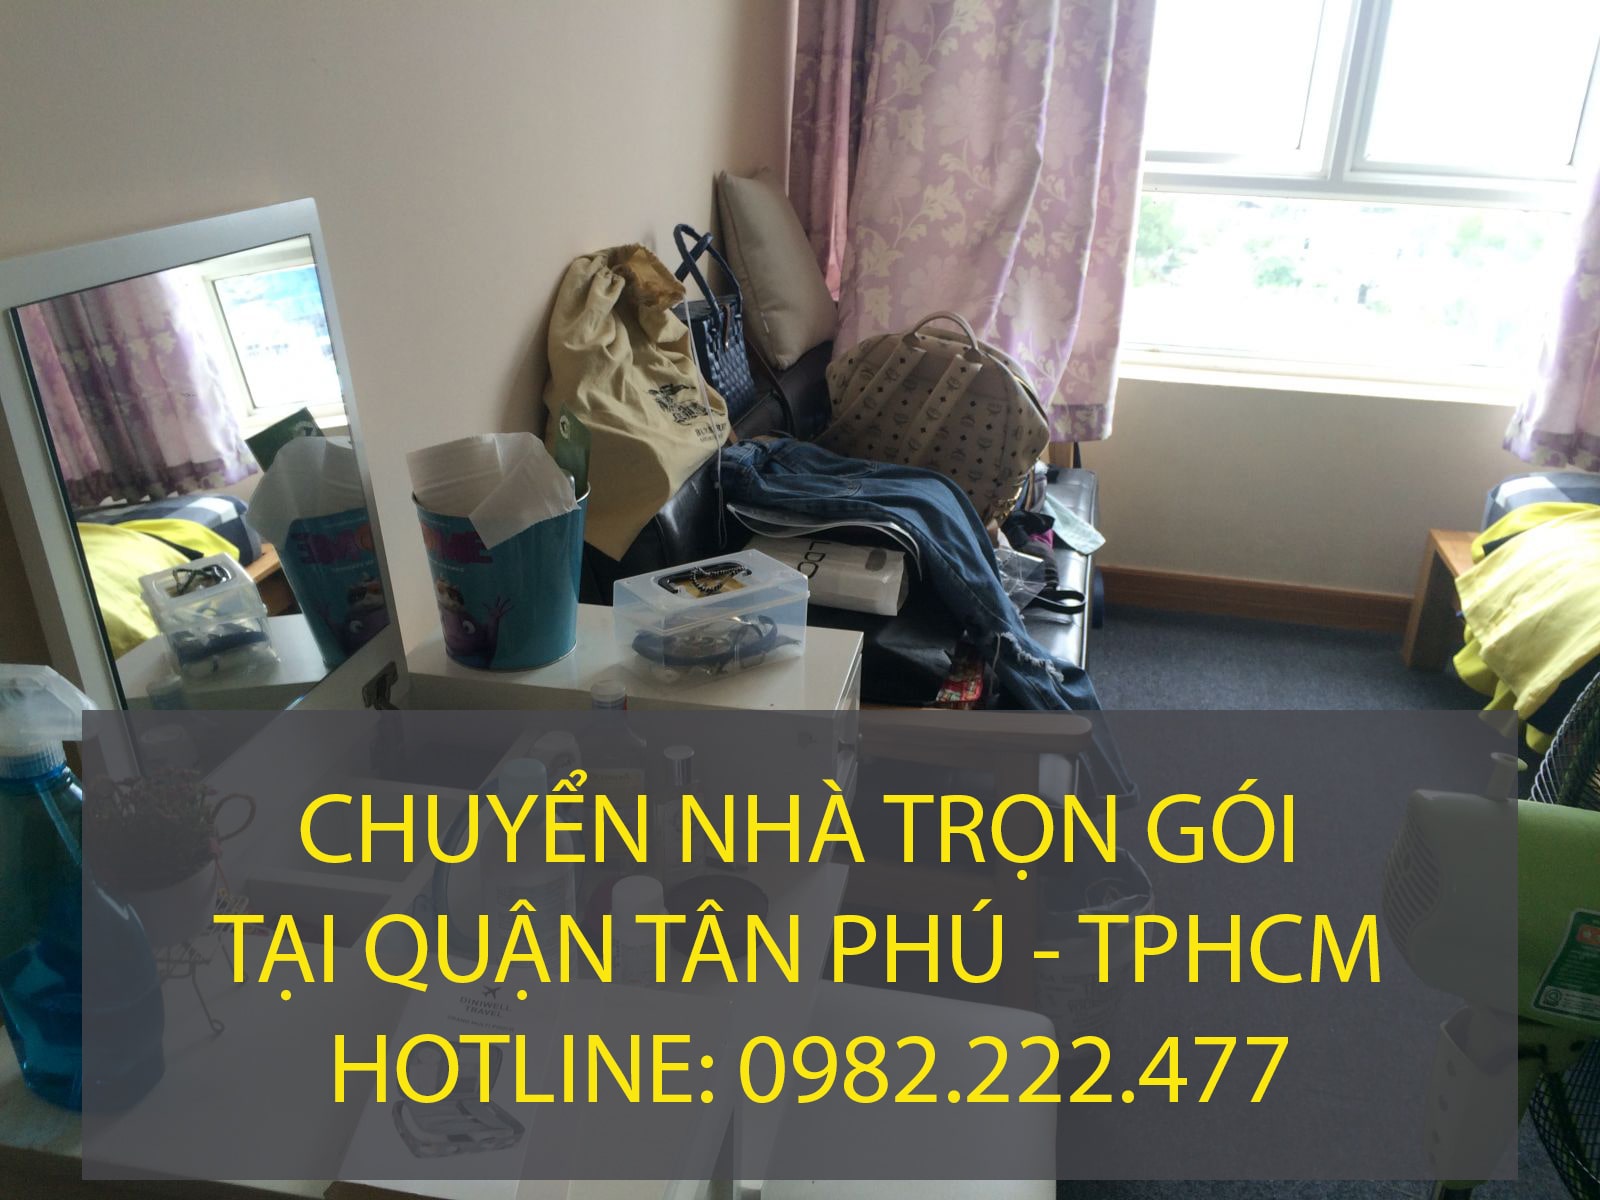 Chuyển nhà trọn gói tại Quận Tân Phú giá rẻ - công ty Lâm Sang